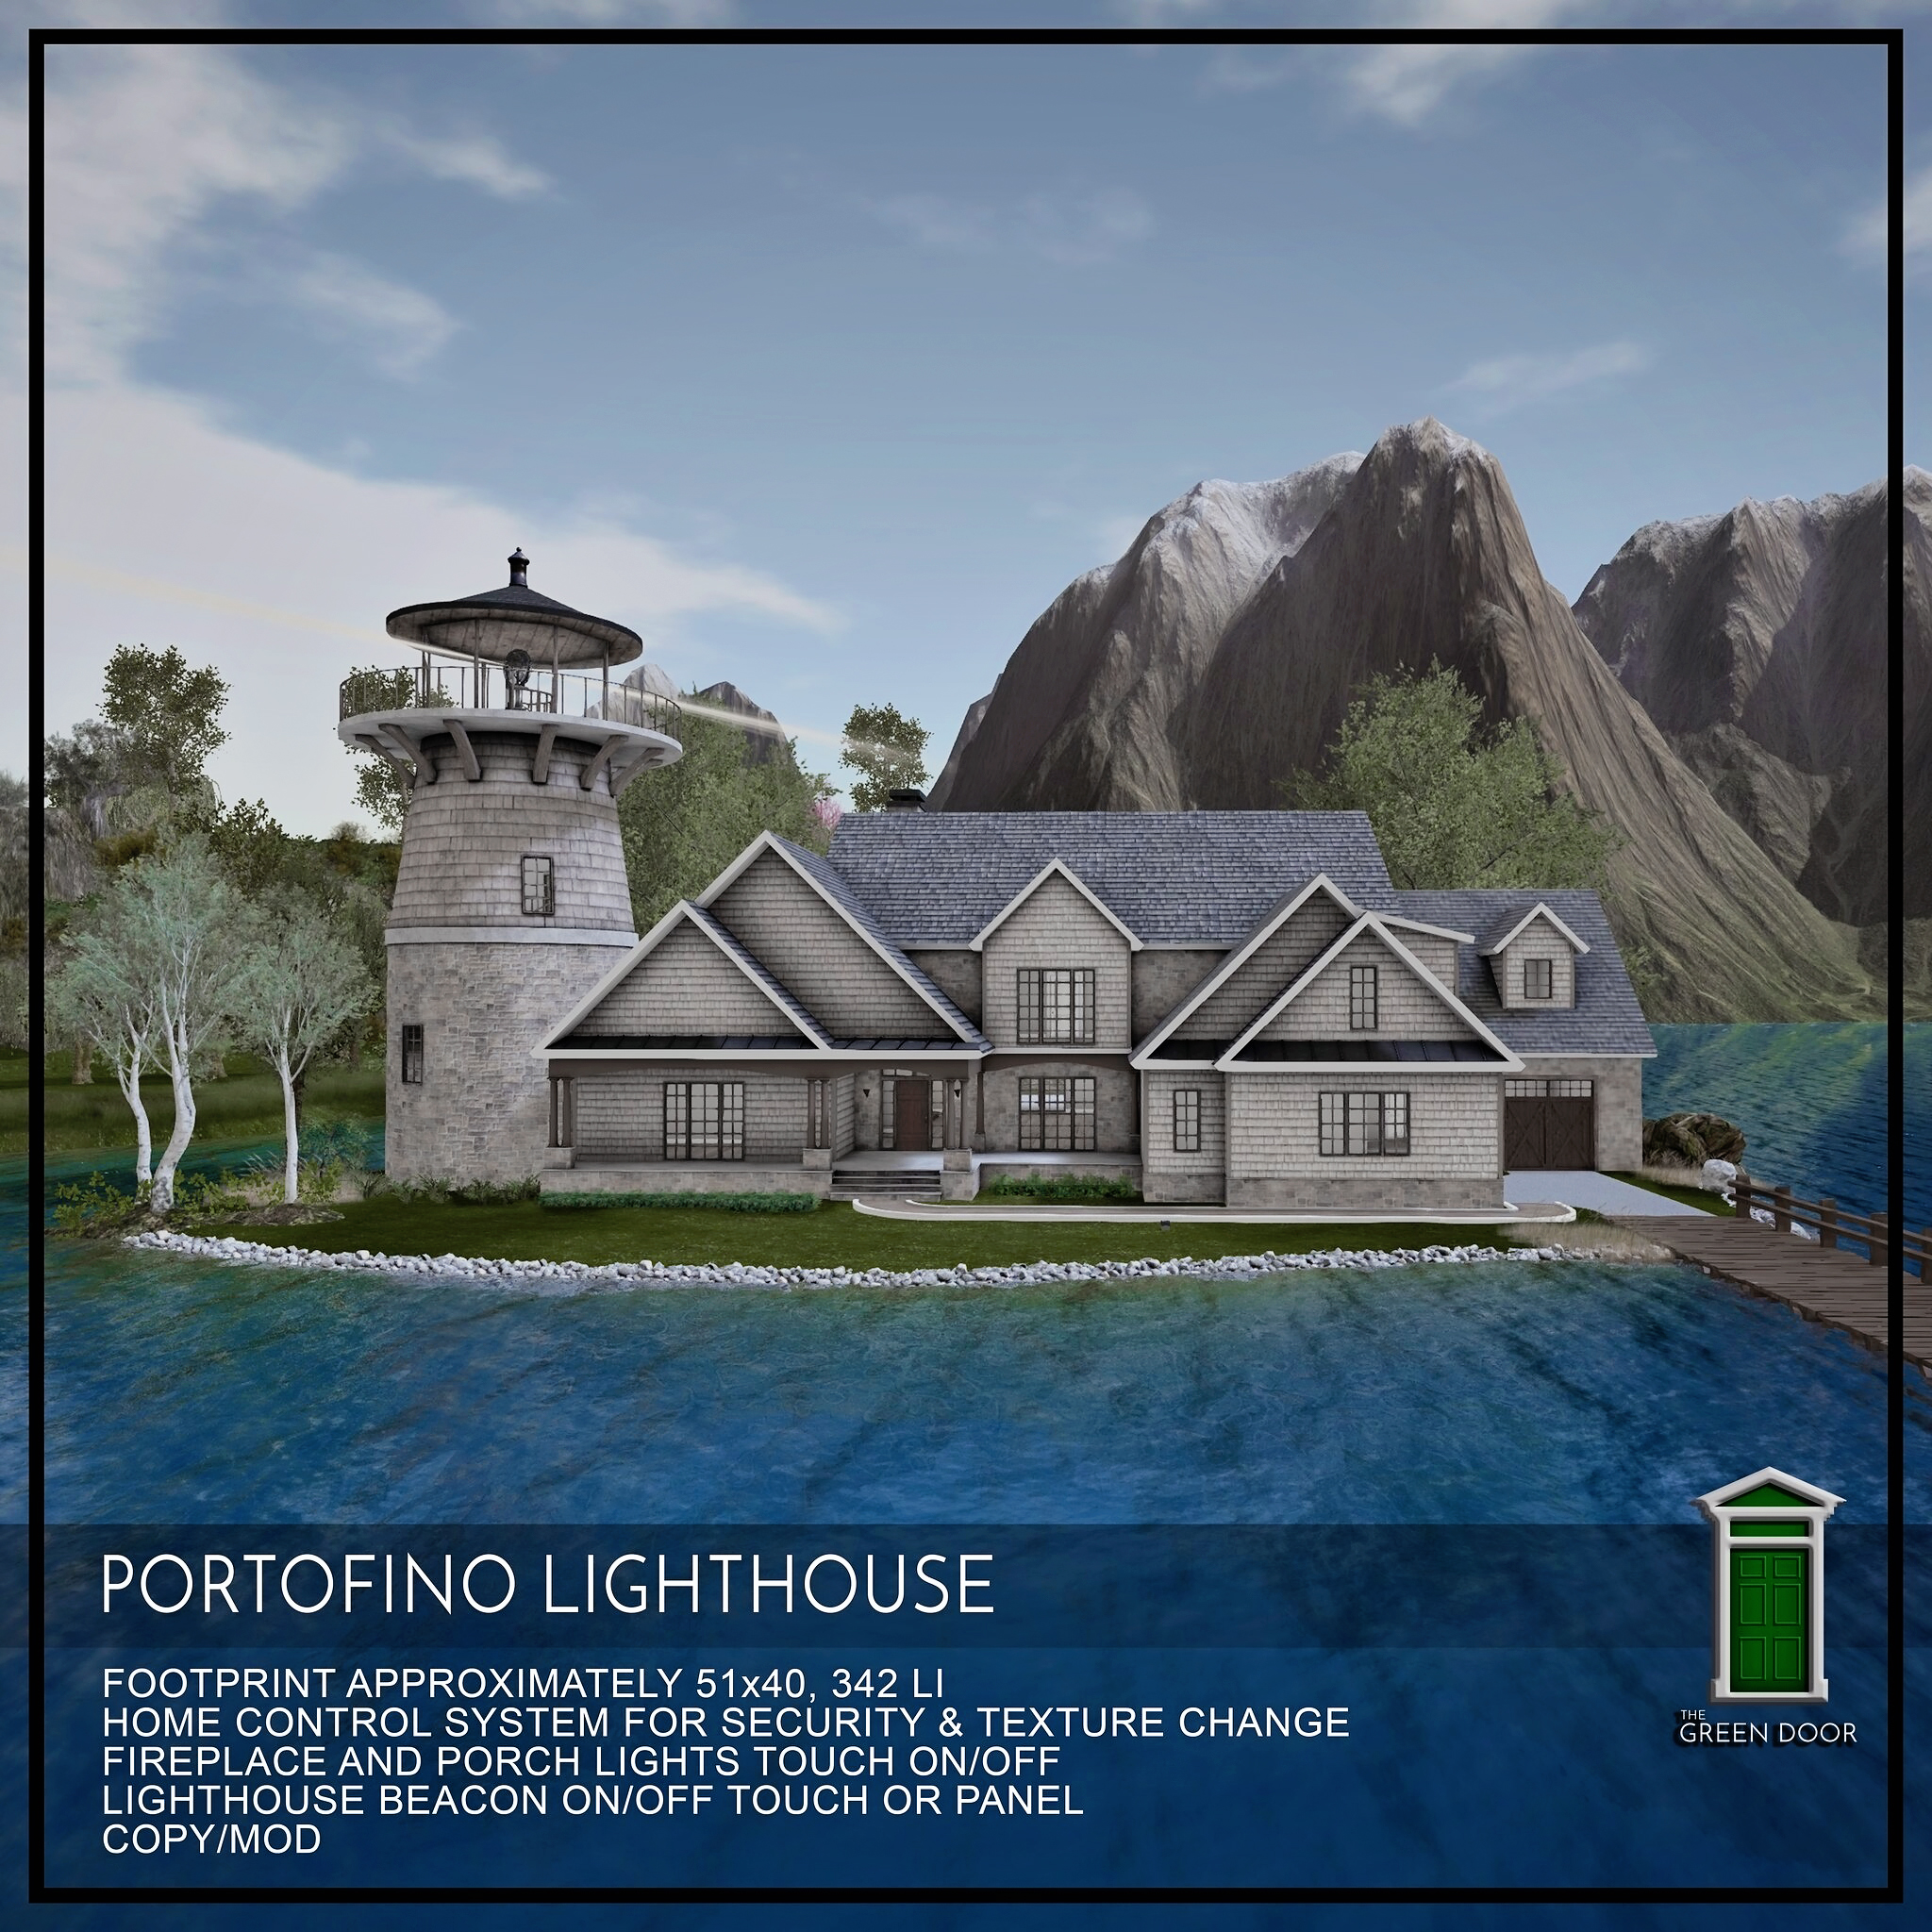 The Green Door – Portofino Lighthouse